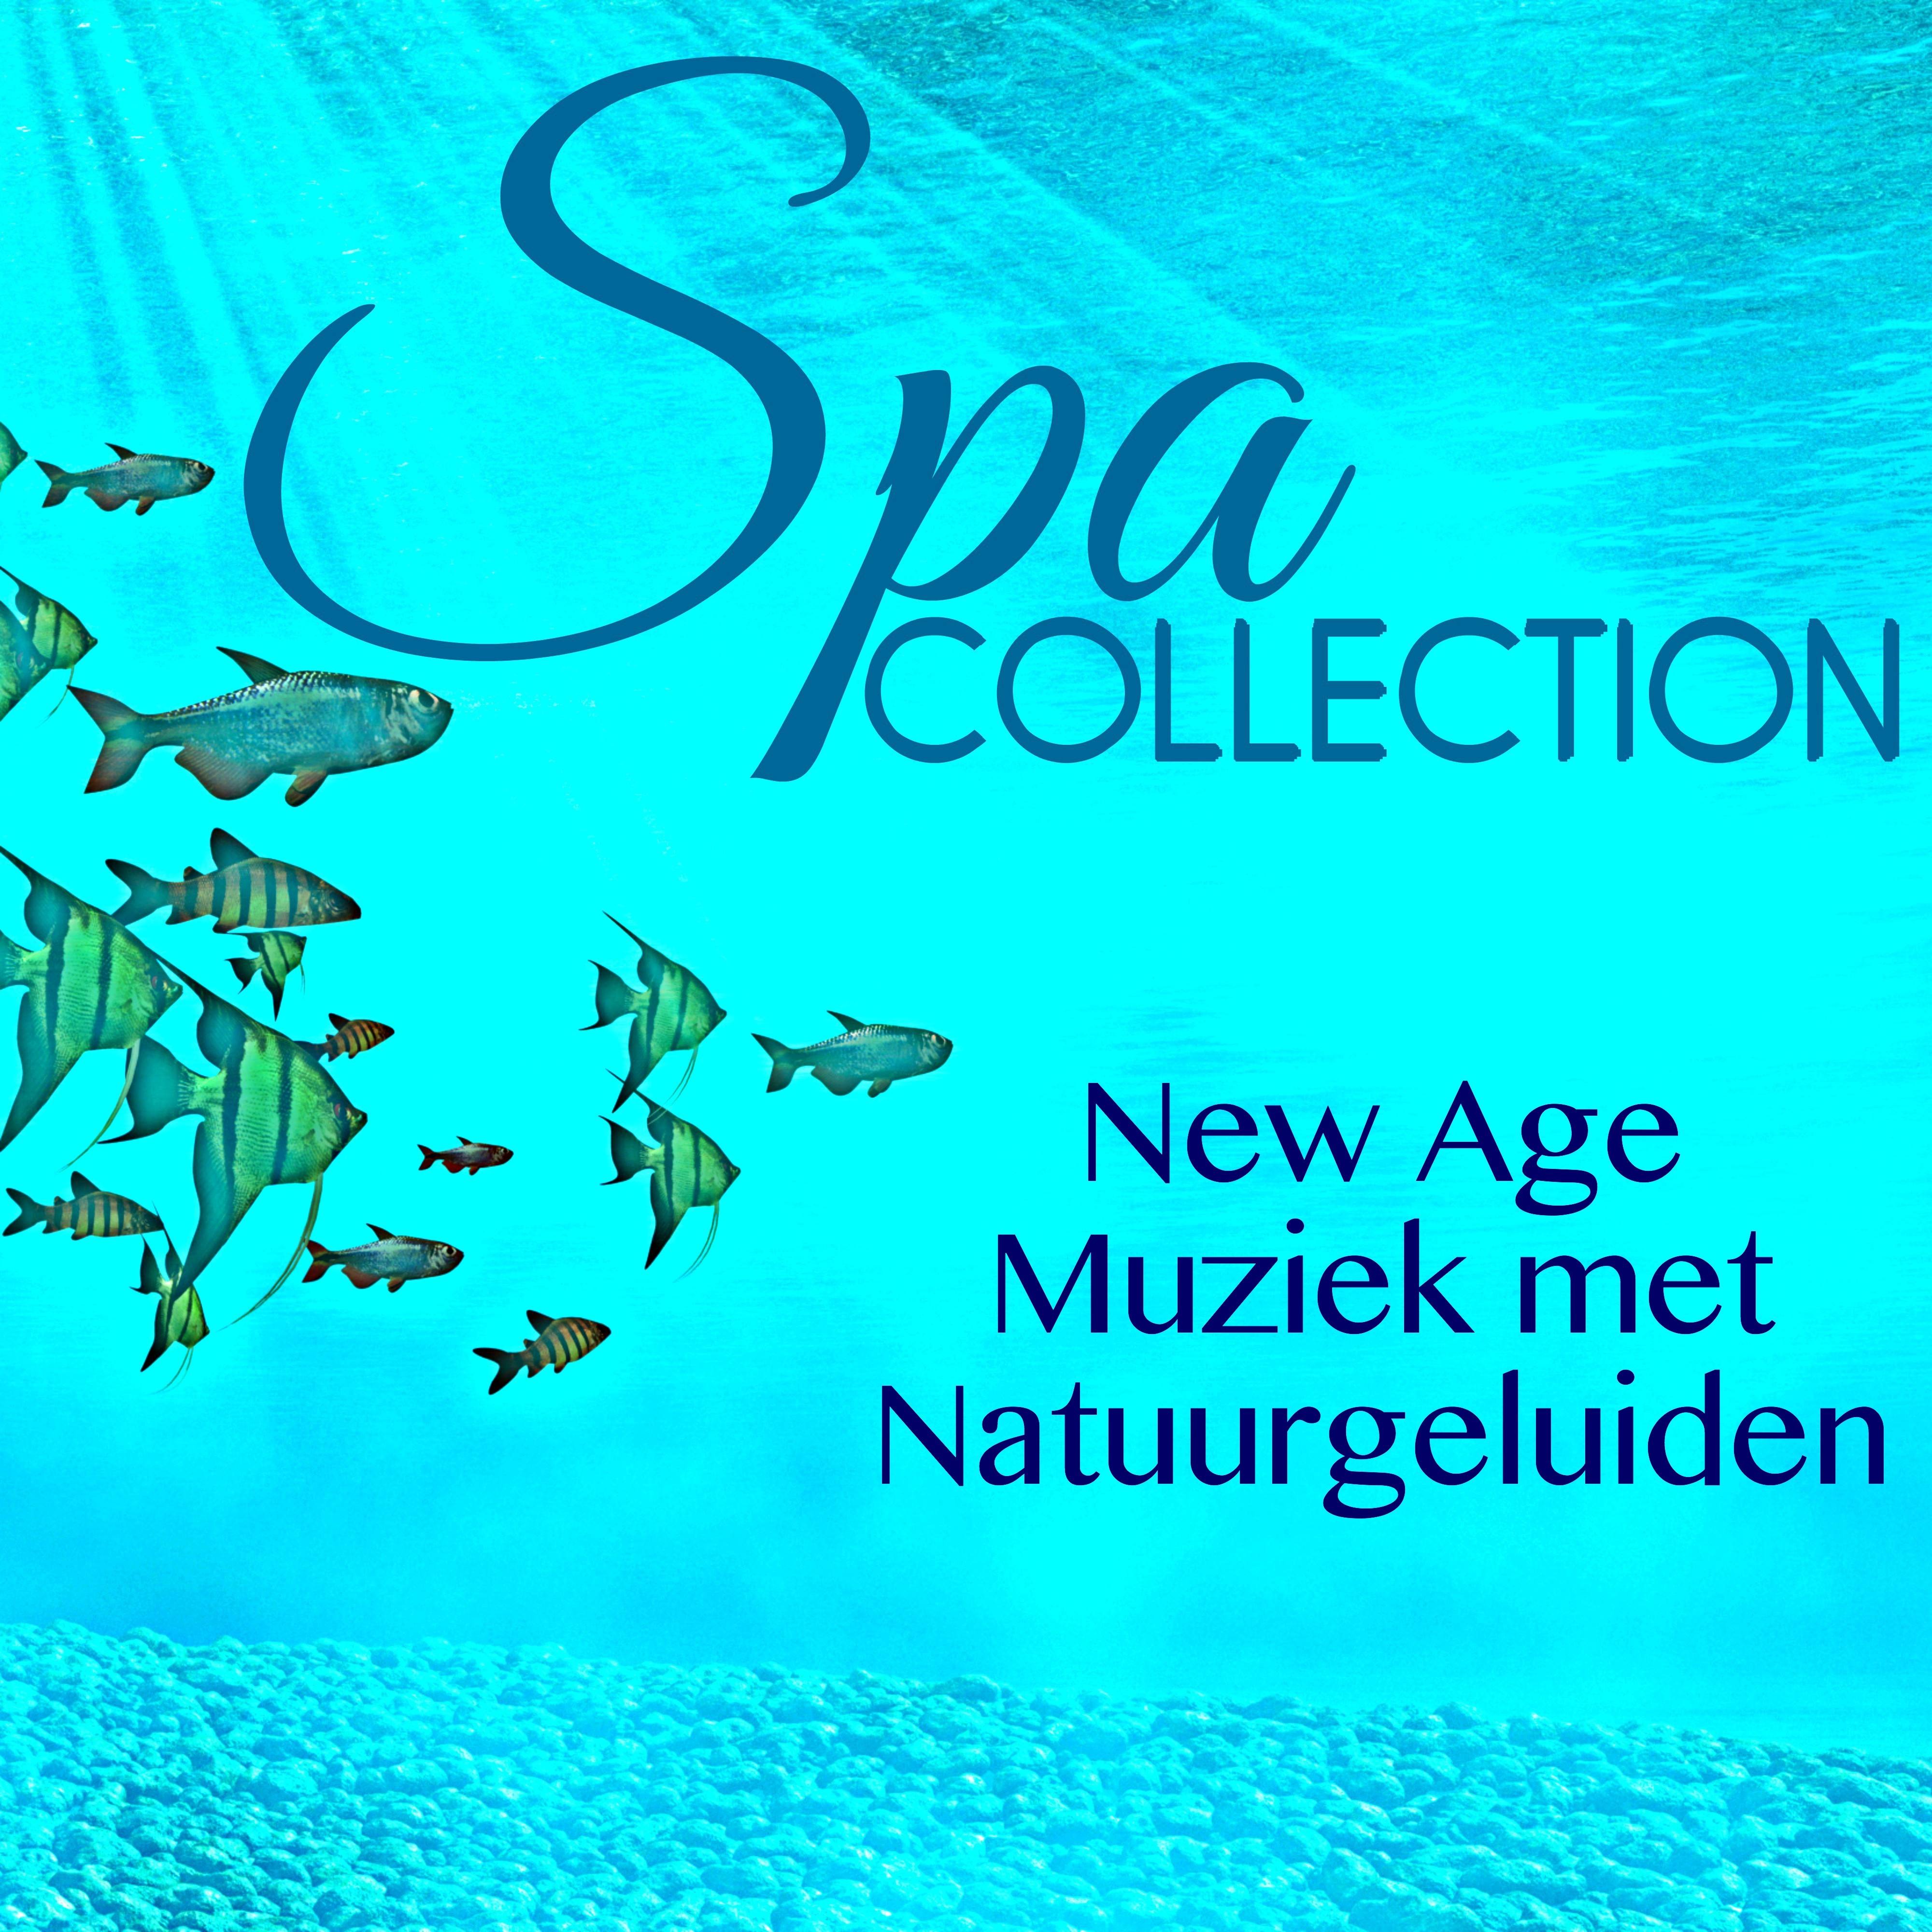 Spa Collection - New Age Muziek met Natuurgeluiden & Ambient Instrumentale Chillout Muziek Collectie voor Ontspanningsmassage, Welzijn & Bio-Energie, Zen Spa Meditatie